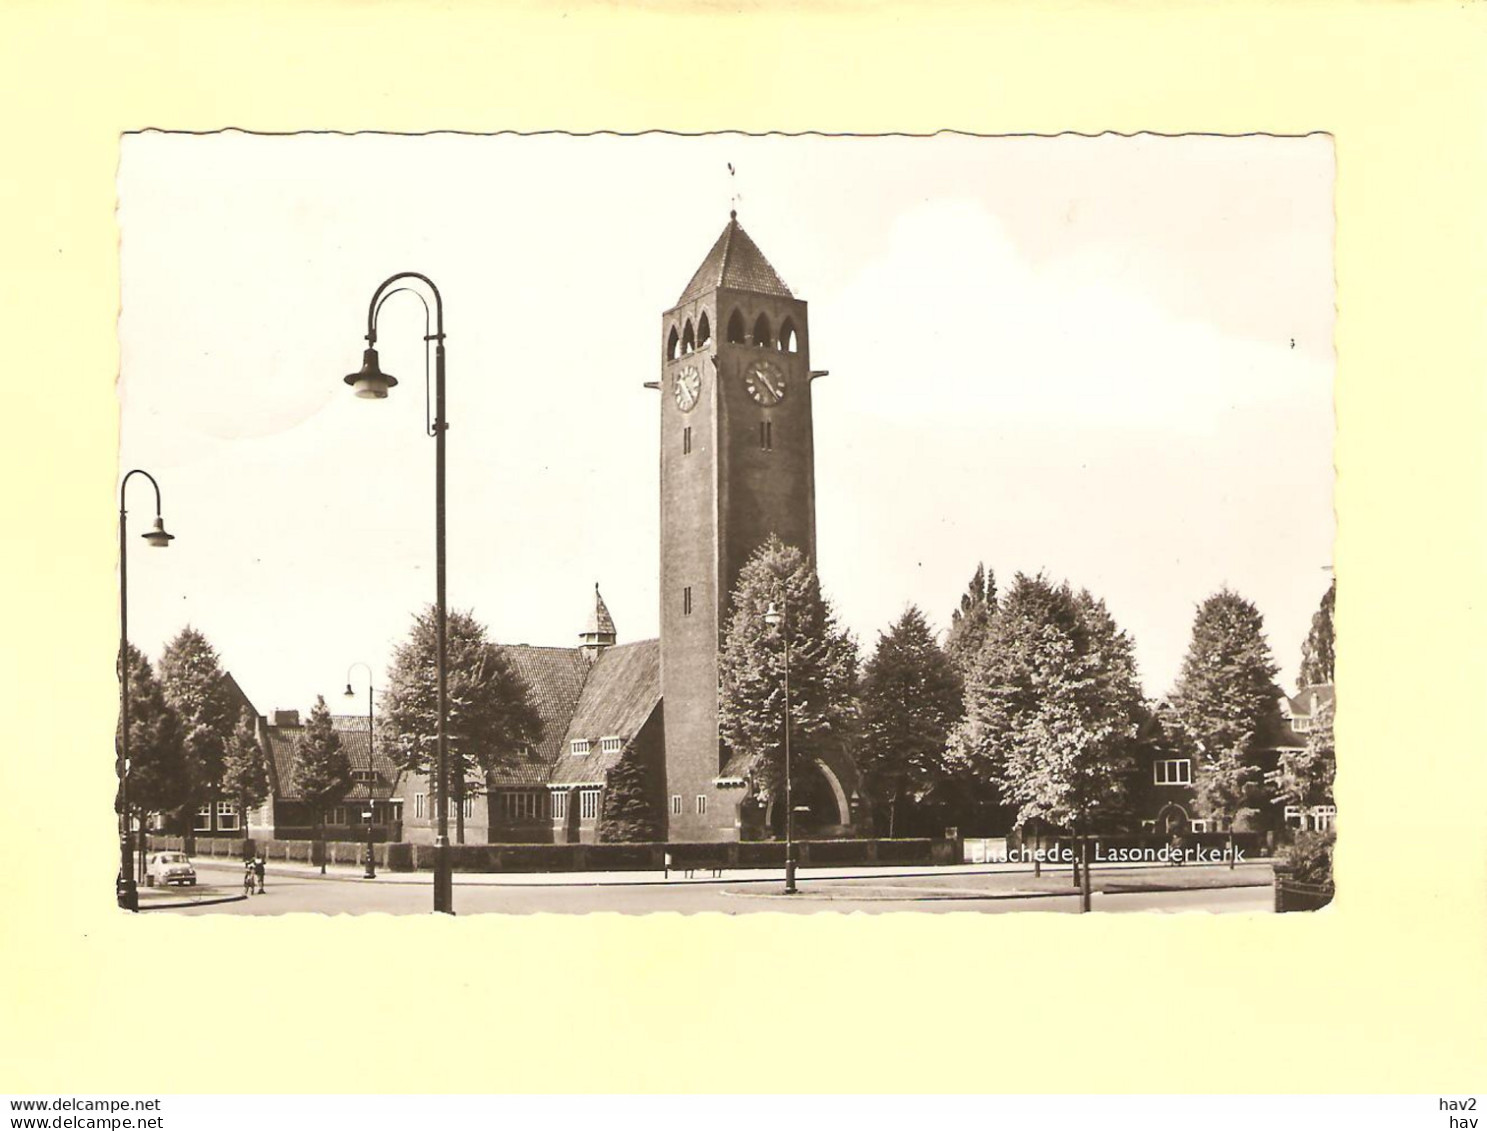 Enschede Gezicht Op Lasonder Kerk 1958 RY43457 - Enschede